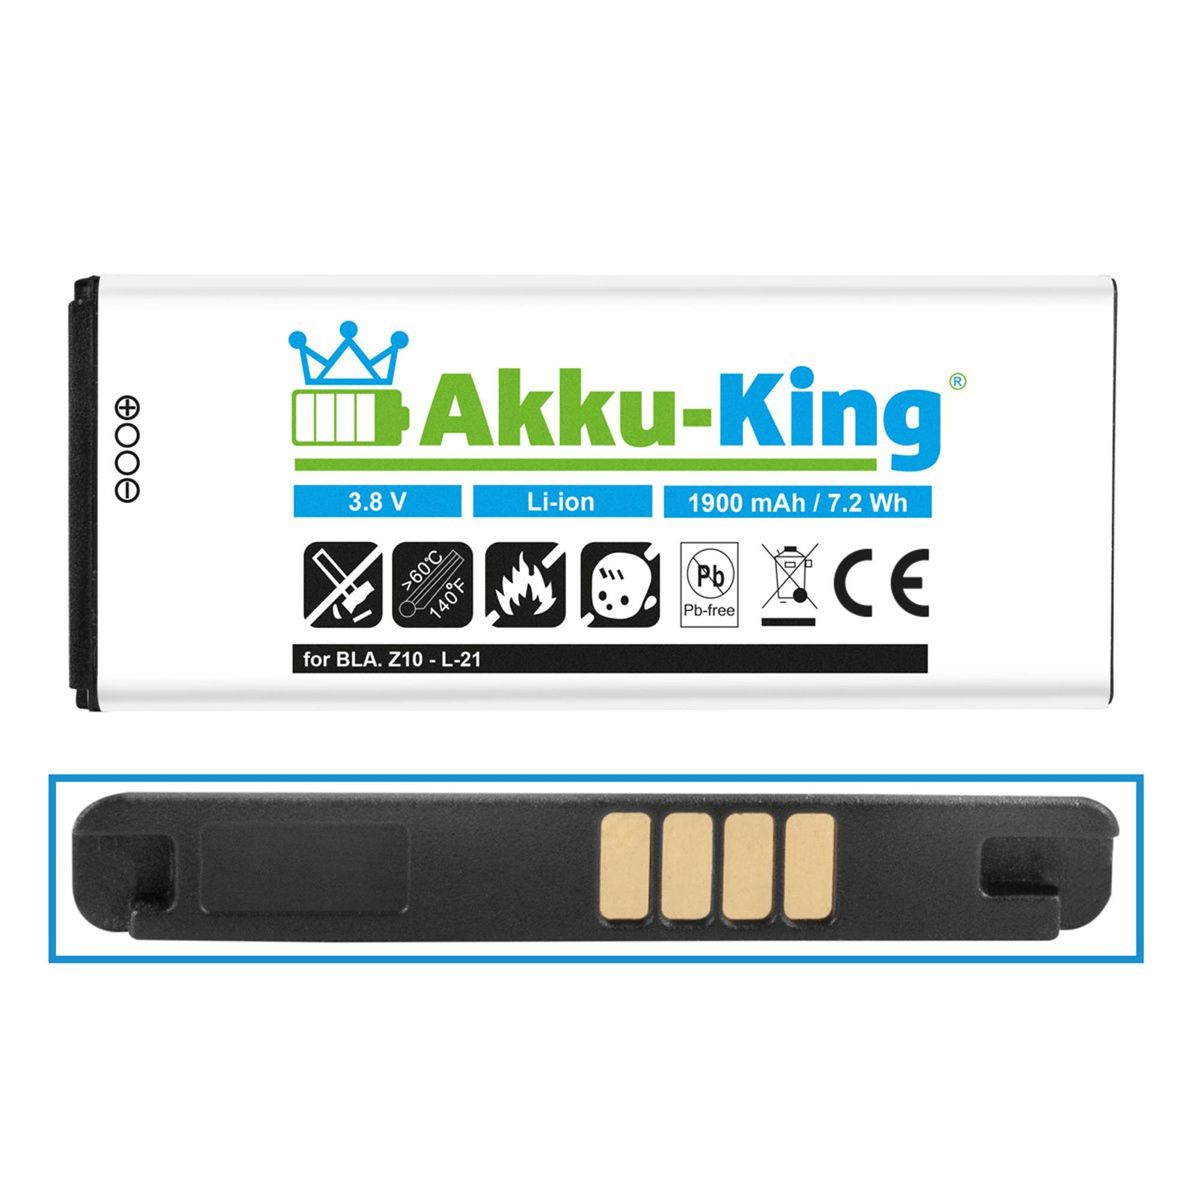 für AKKU-KING 3.8 1900mAh Volt, Akku Li-Ion L-S1 Handy-Akku, BlackBerry